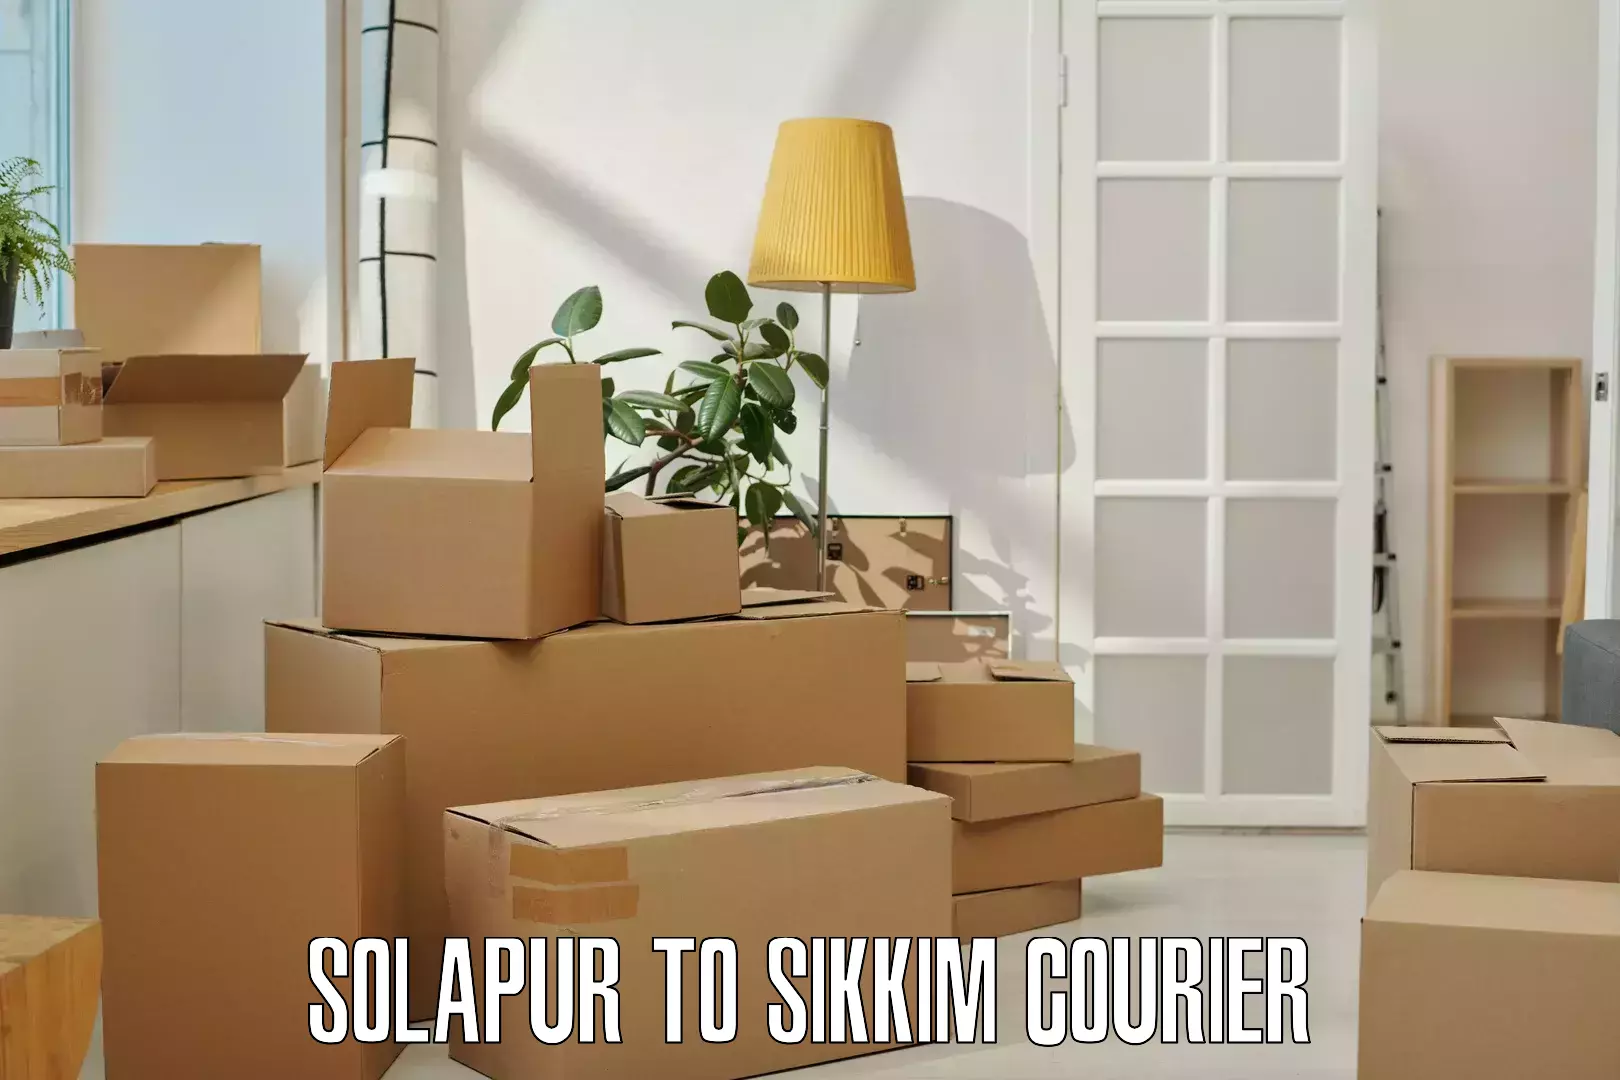 Efficient parcel transport Solapur to Gangtok